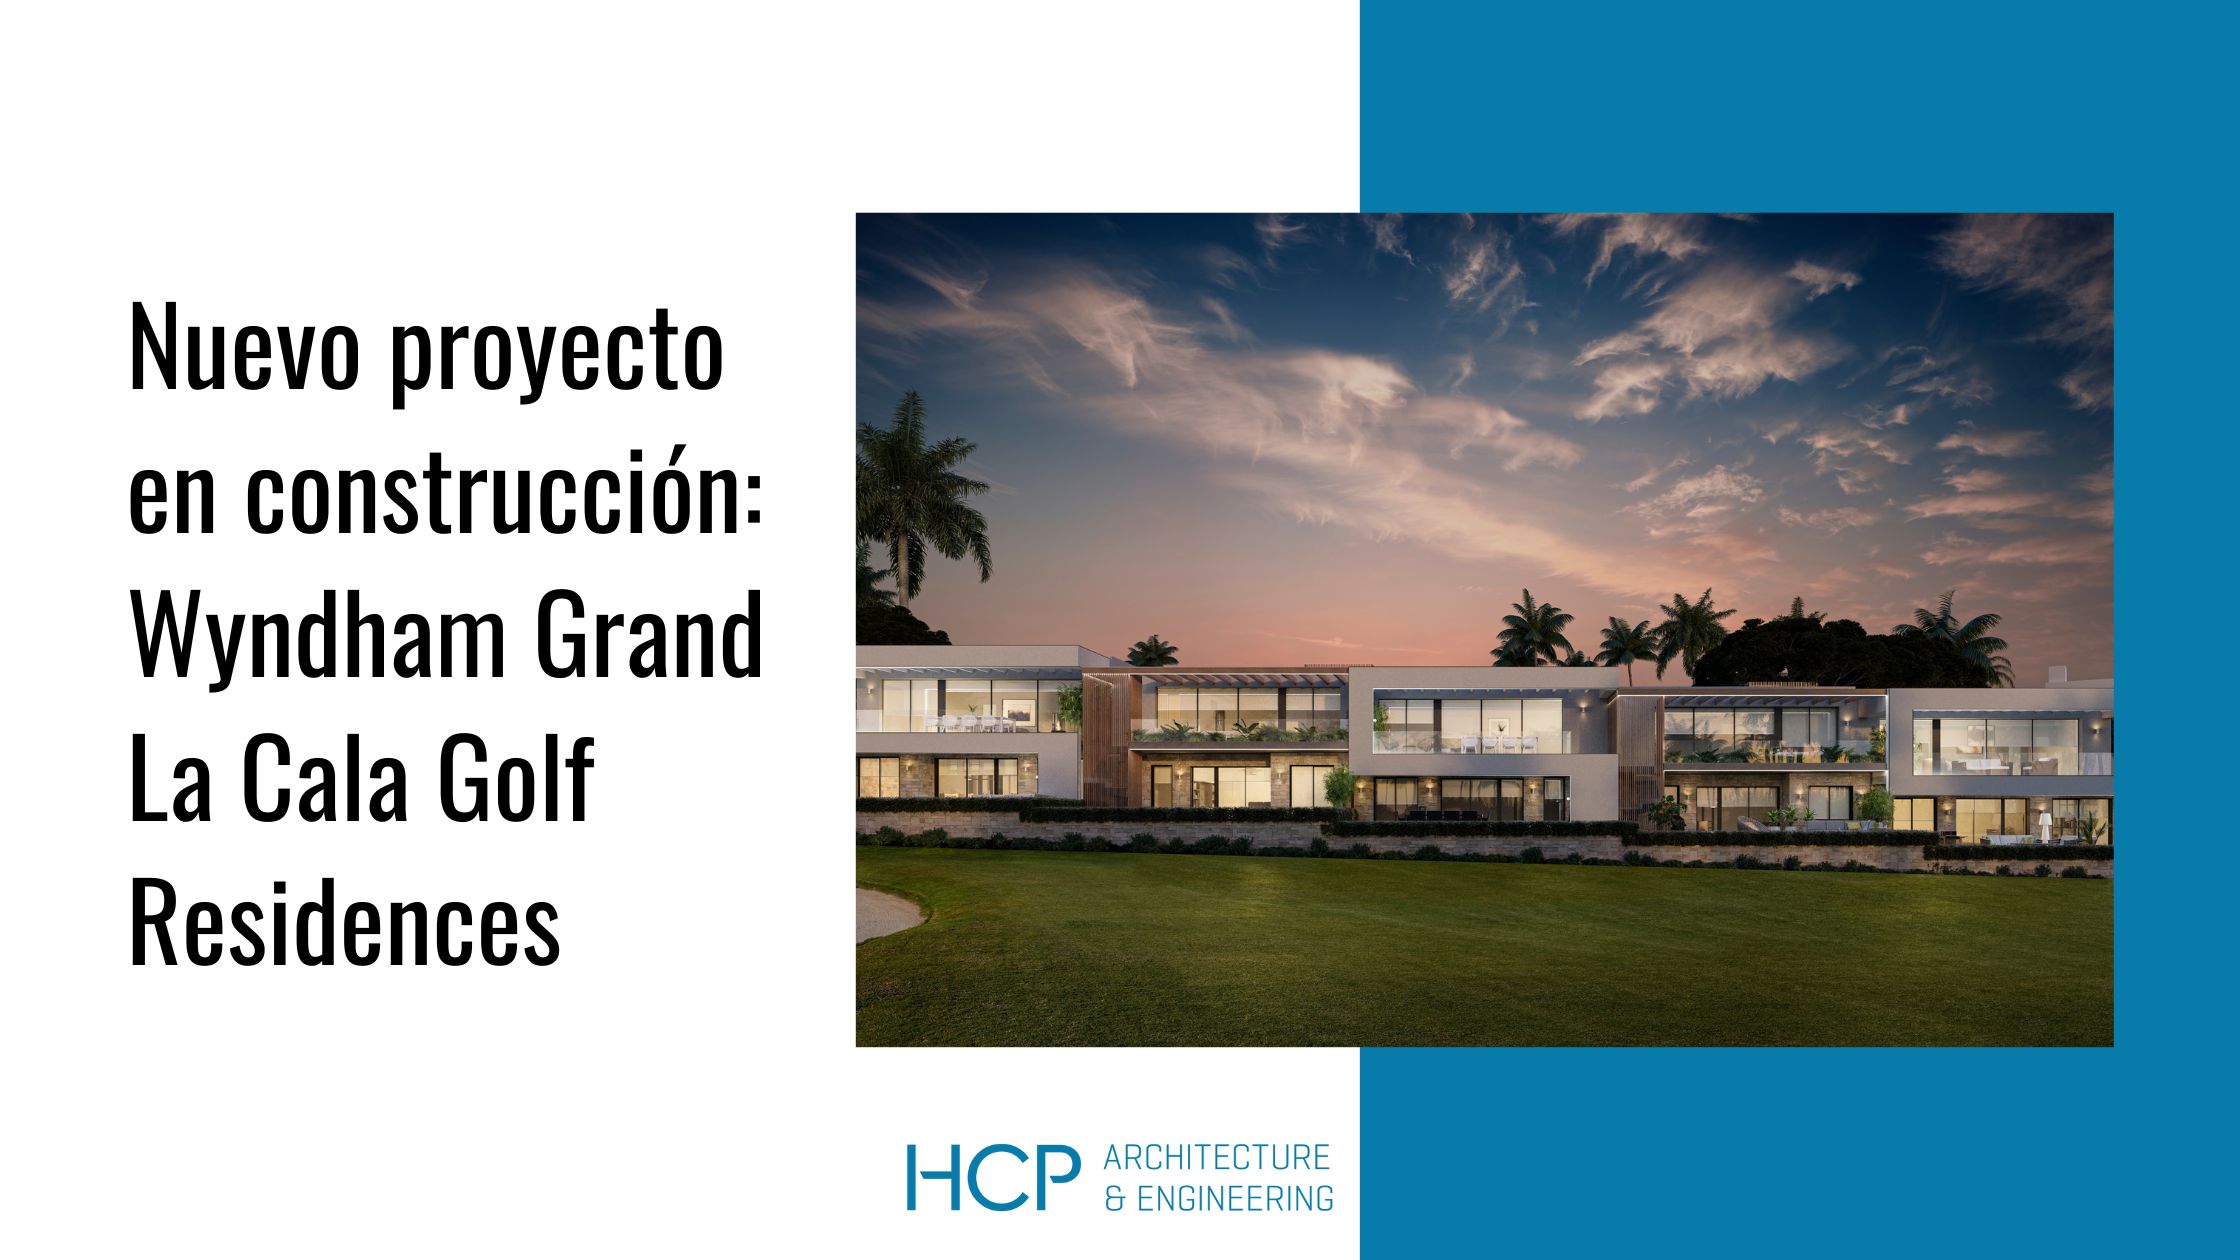 Nuevo proyecto de arquitectura residencial en construcción de HCP: Wyndham Grand La Cala Golf Residences